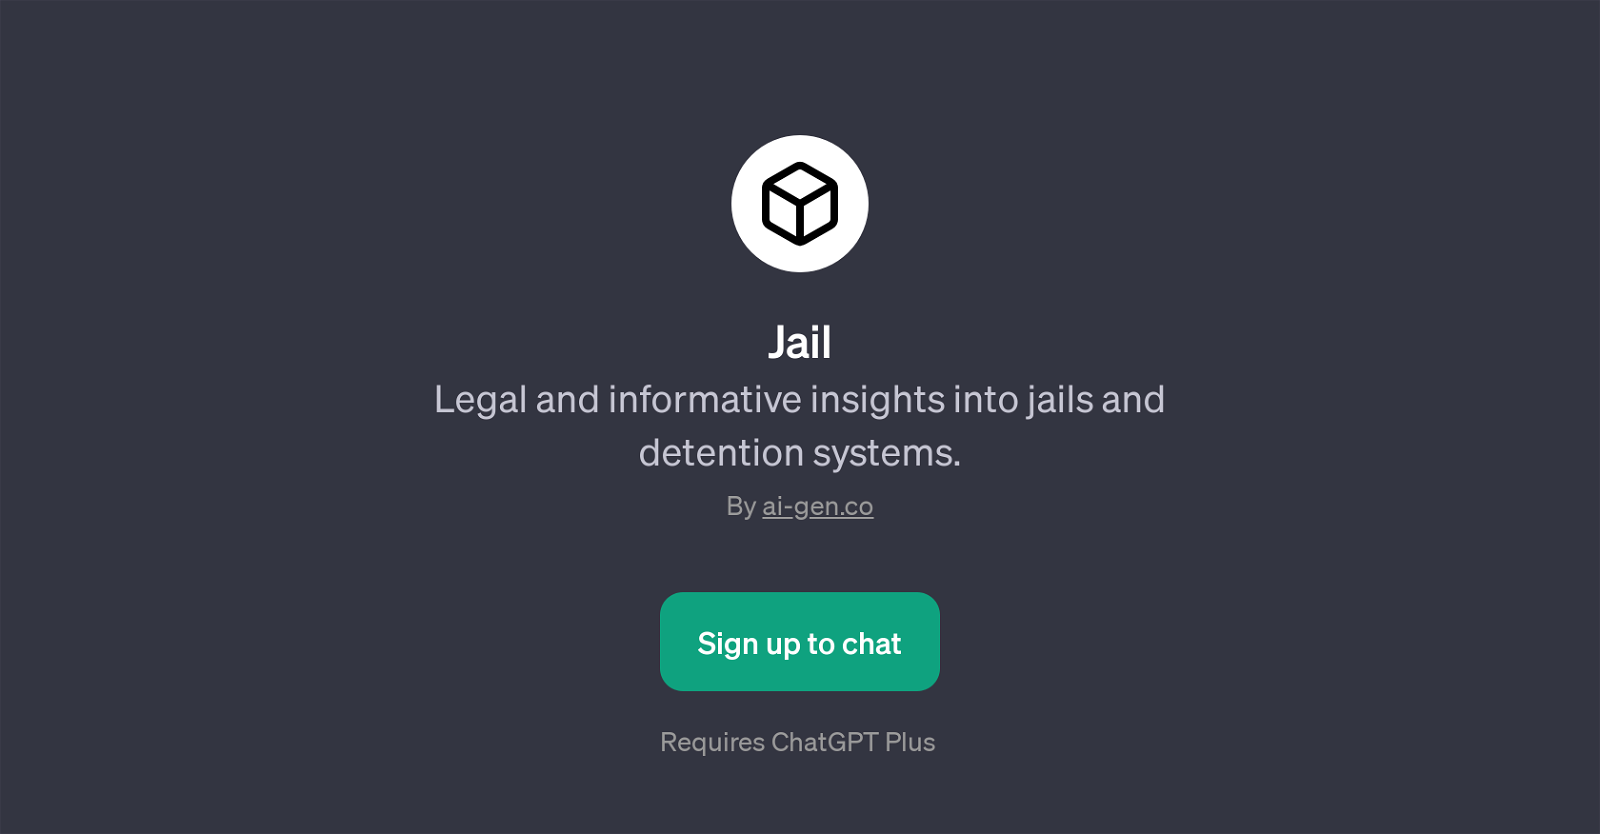 JailPage website